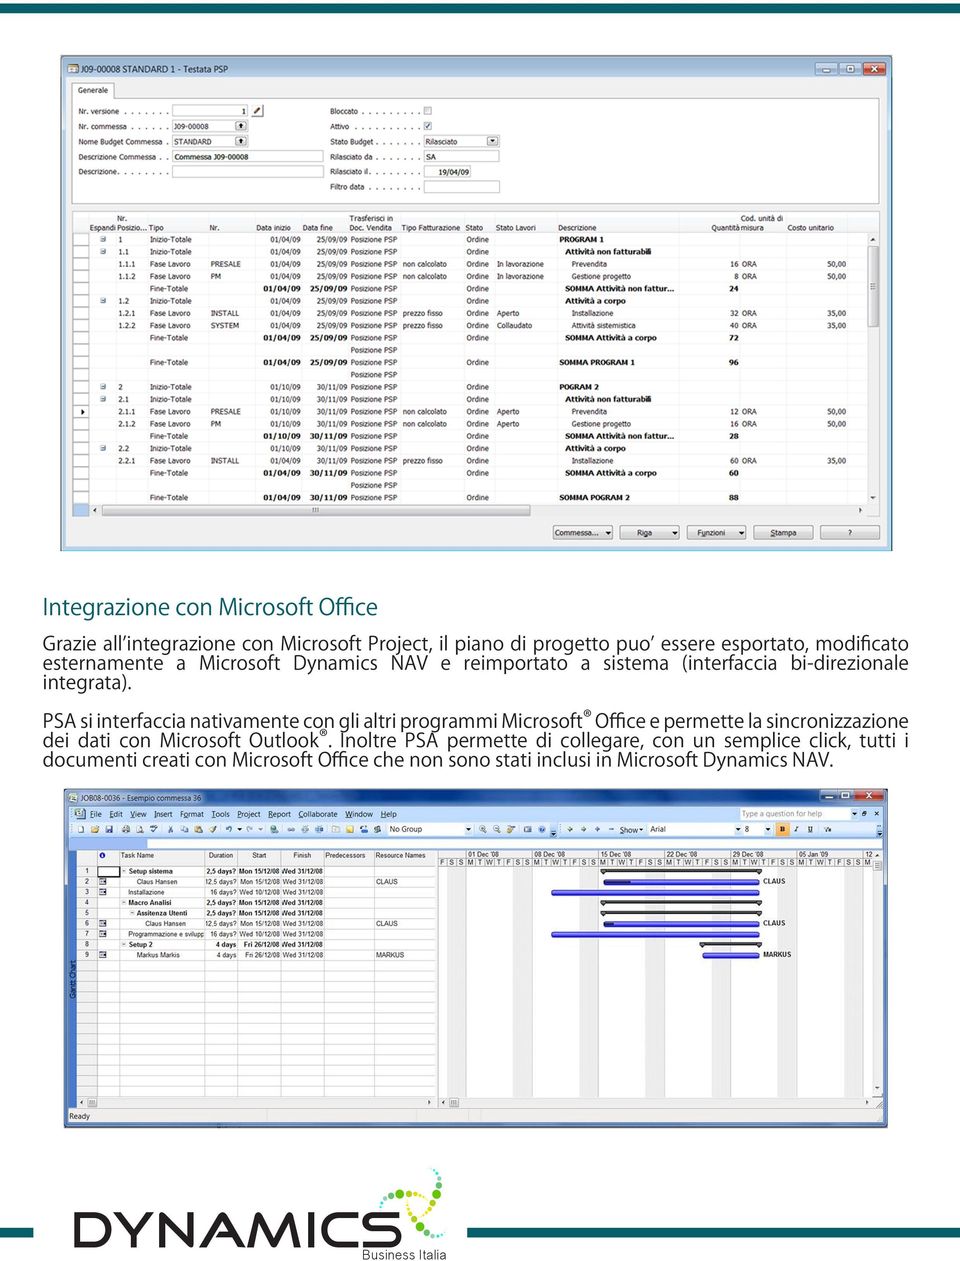 PSA si interfaccia nativamente con gli altri programmi Microsoft Office e permette la sincronizzazione dei dati con Microsoft Outlook.